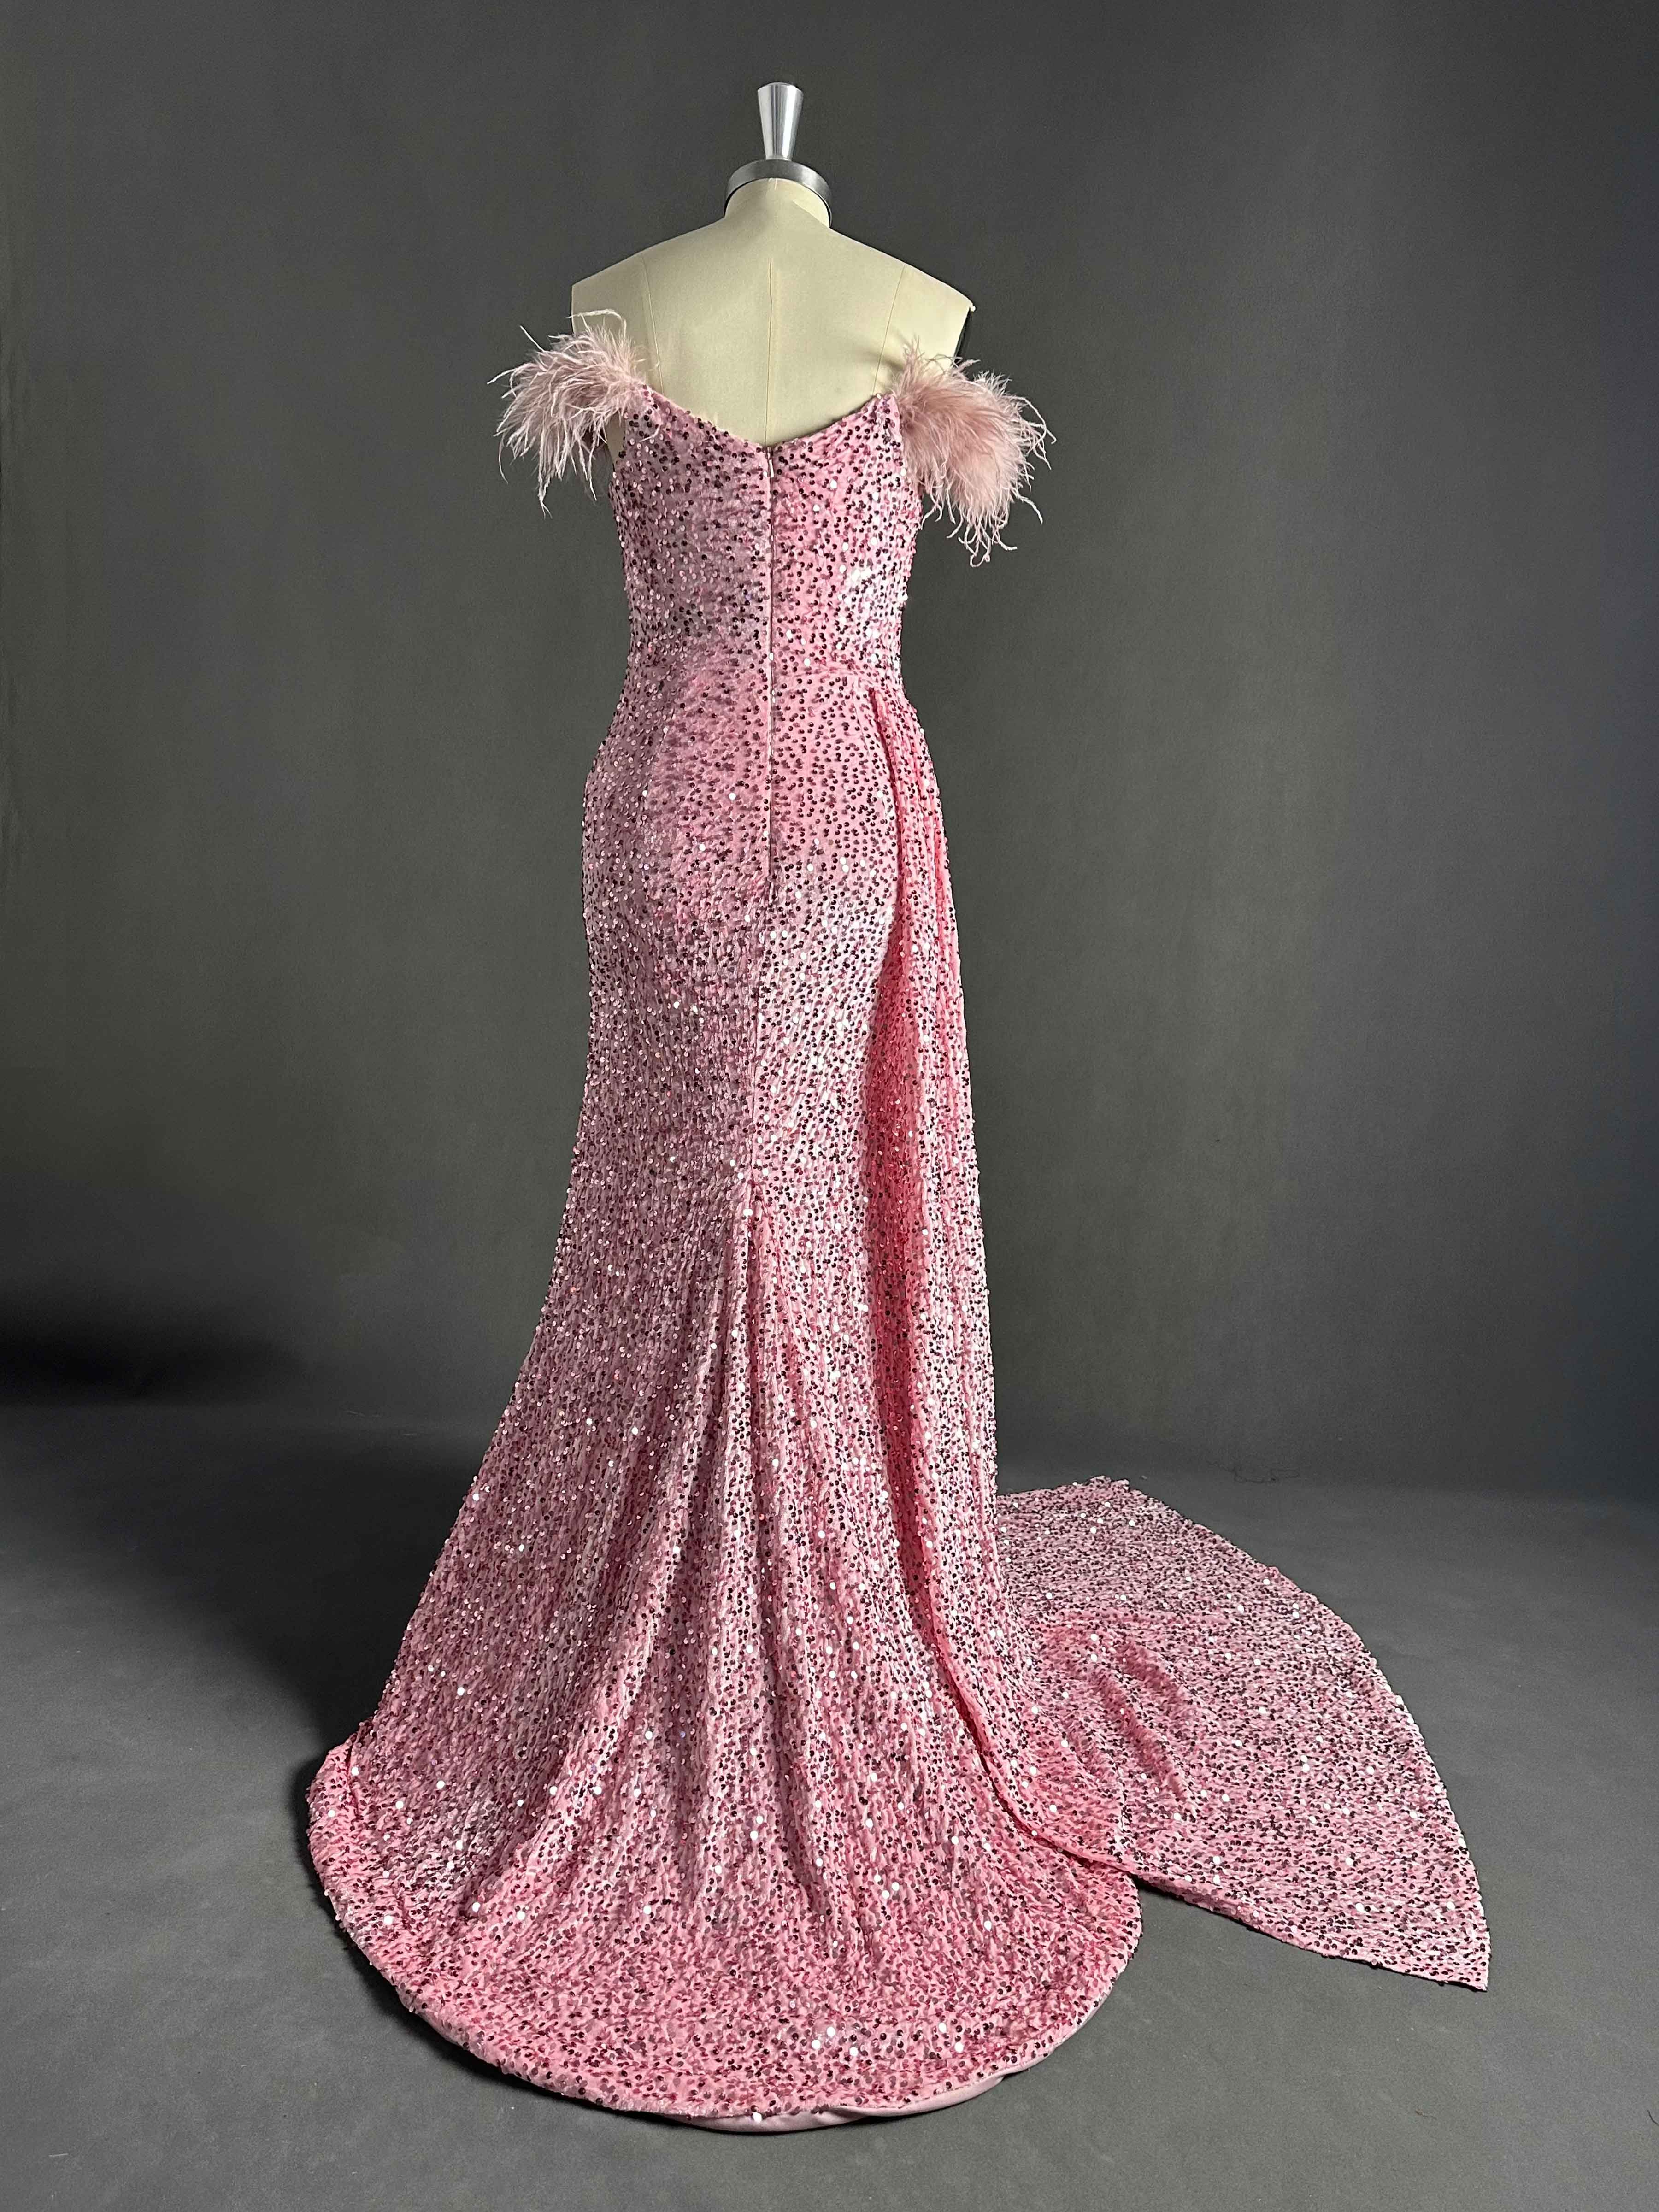 Evelynn Glamorous Sequin Long Mermaid Prom Dresses with Slit